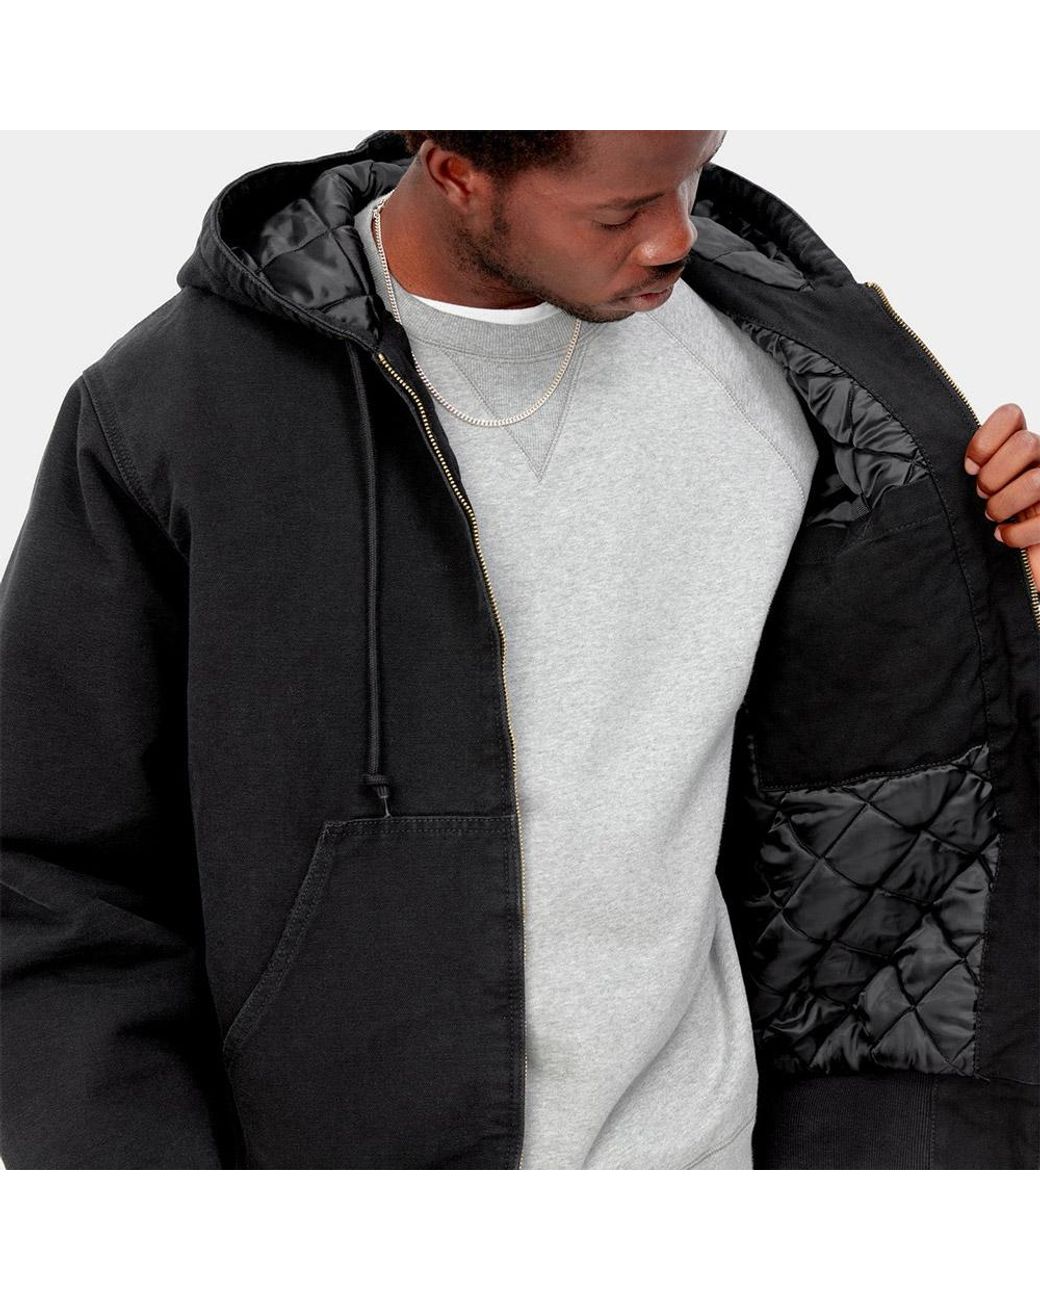 Carhartt WIP Og Active Jacket in Black for Men | Lyst